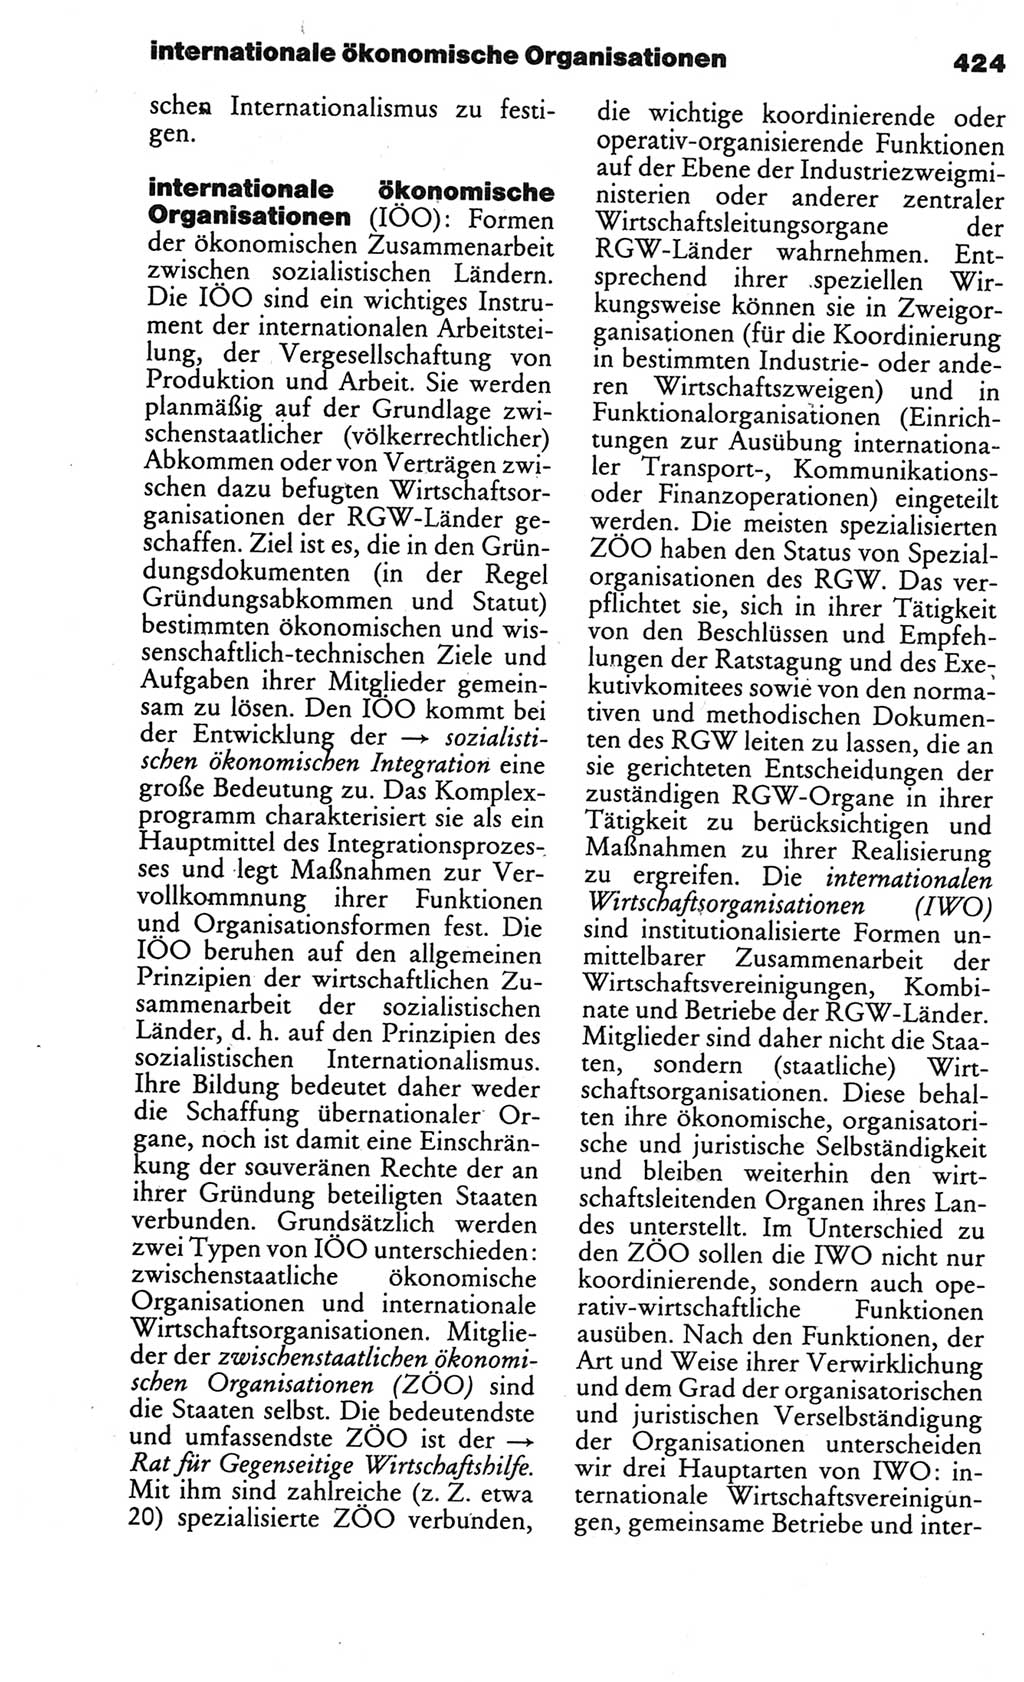 Kleines politisches Wörterbuch [Deutsche Demokratische Republik (DDR)] 1986, Seite 424 (Kl. pol. Wb. DDR 1986, S. 424)